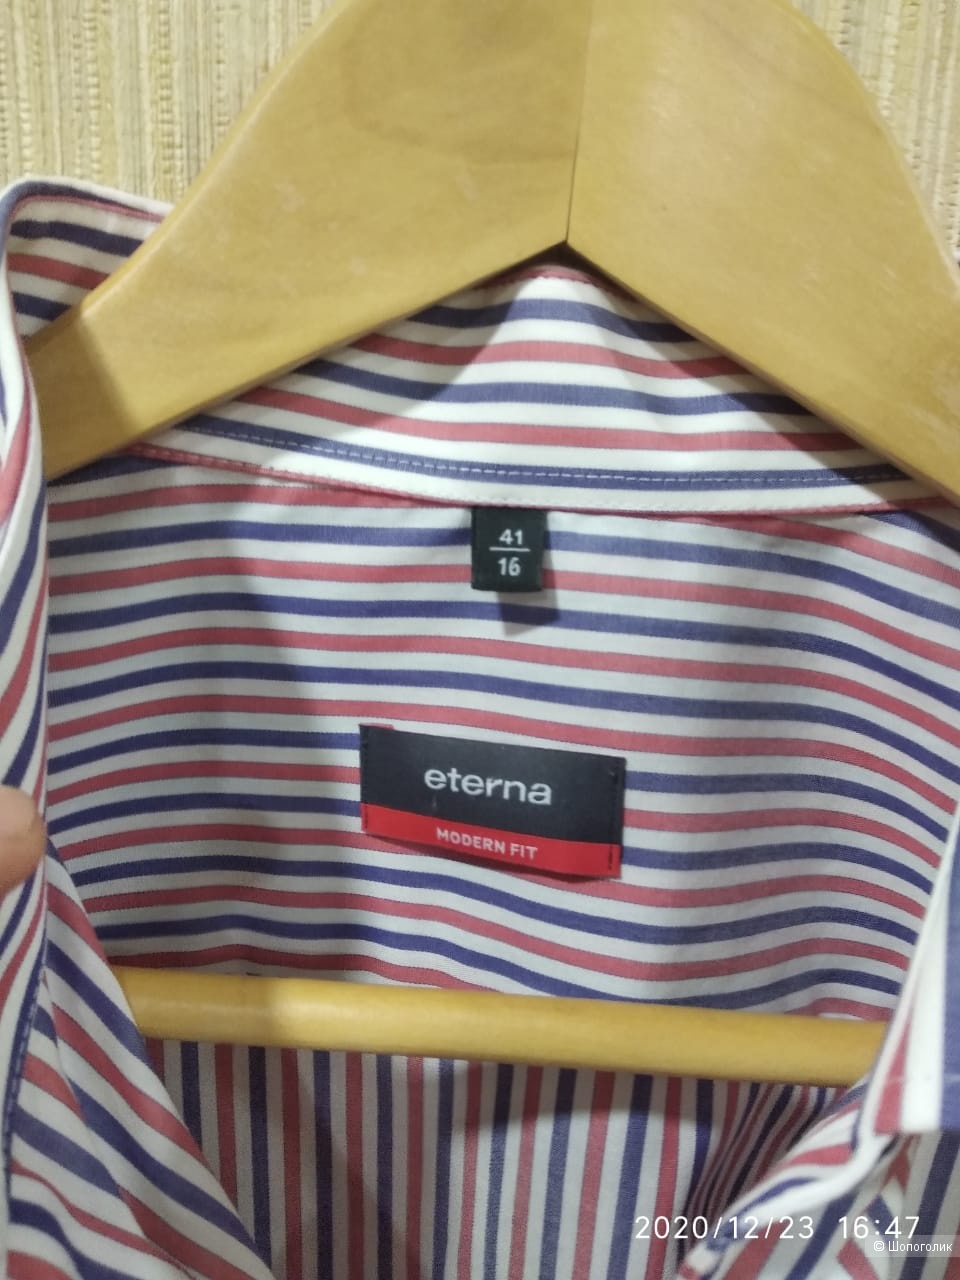 Рубашка Eterna, размер 41 (16)